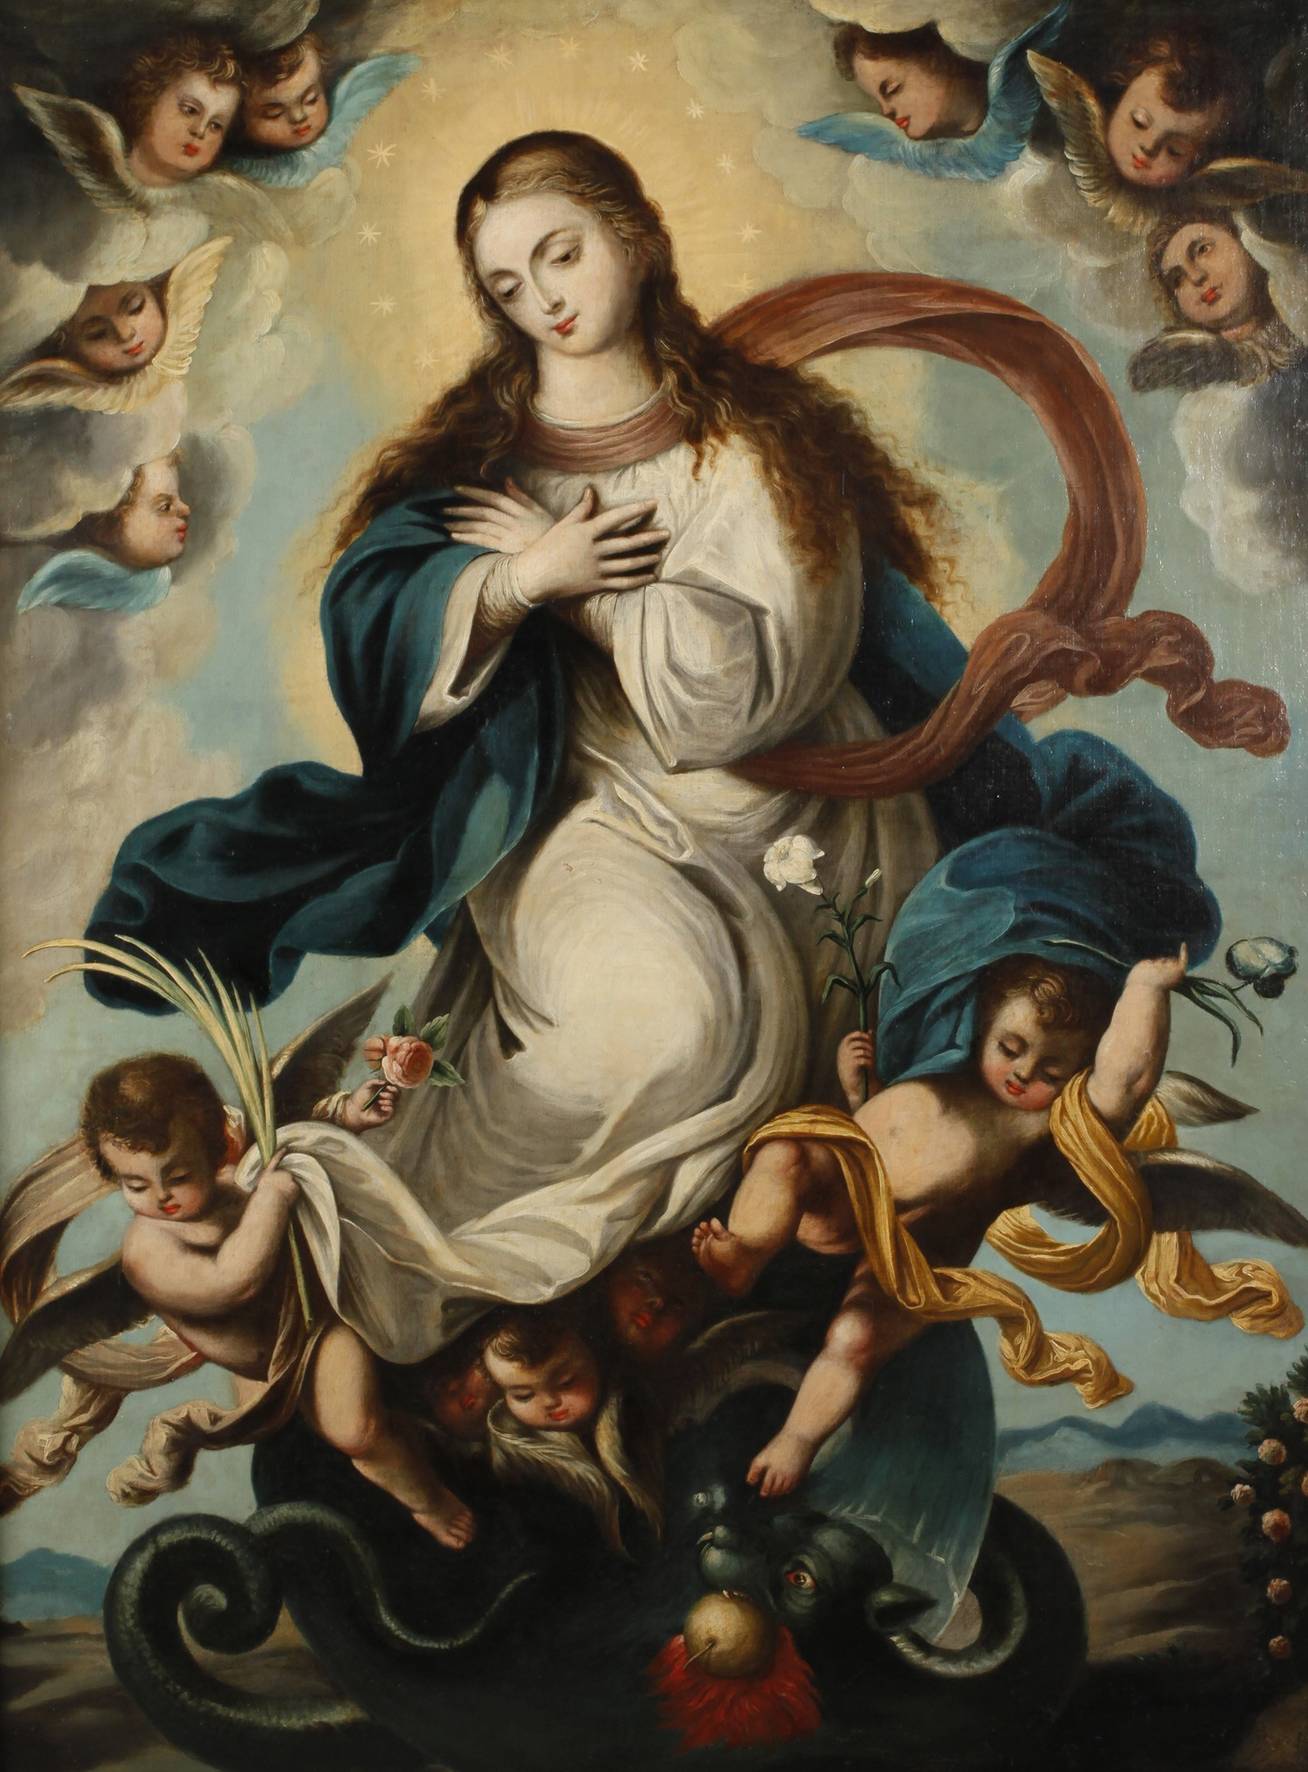 Maria über einem Drachen thronend